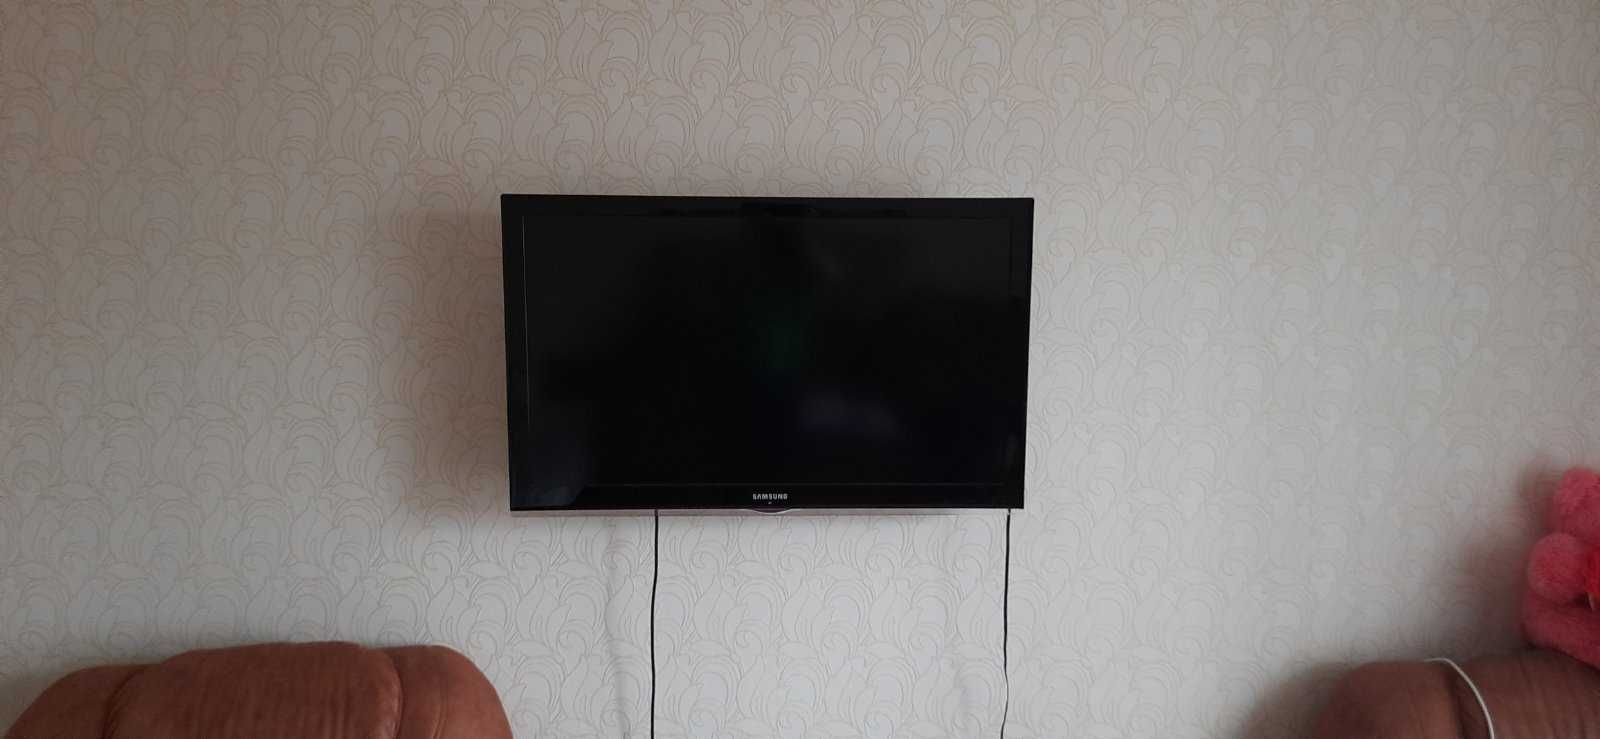 Телевізор Samsung 40 дюймів